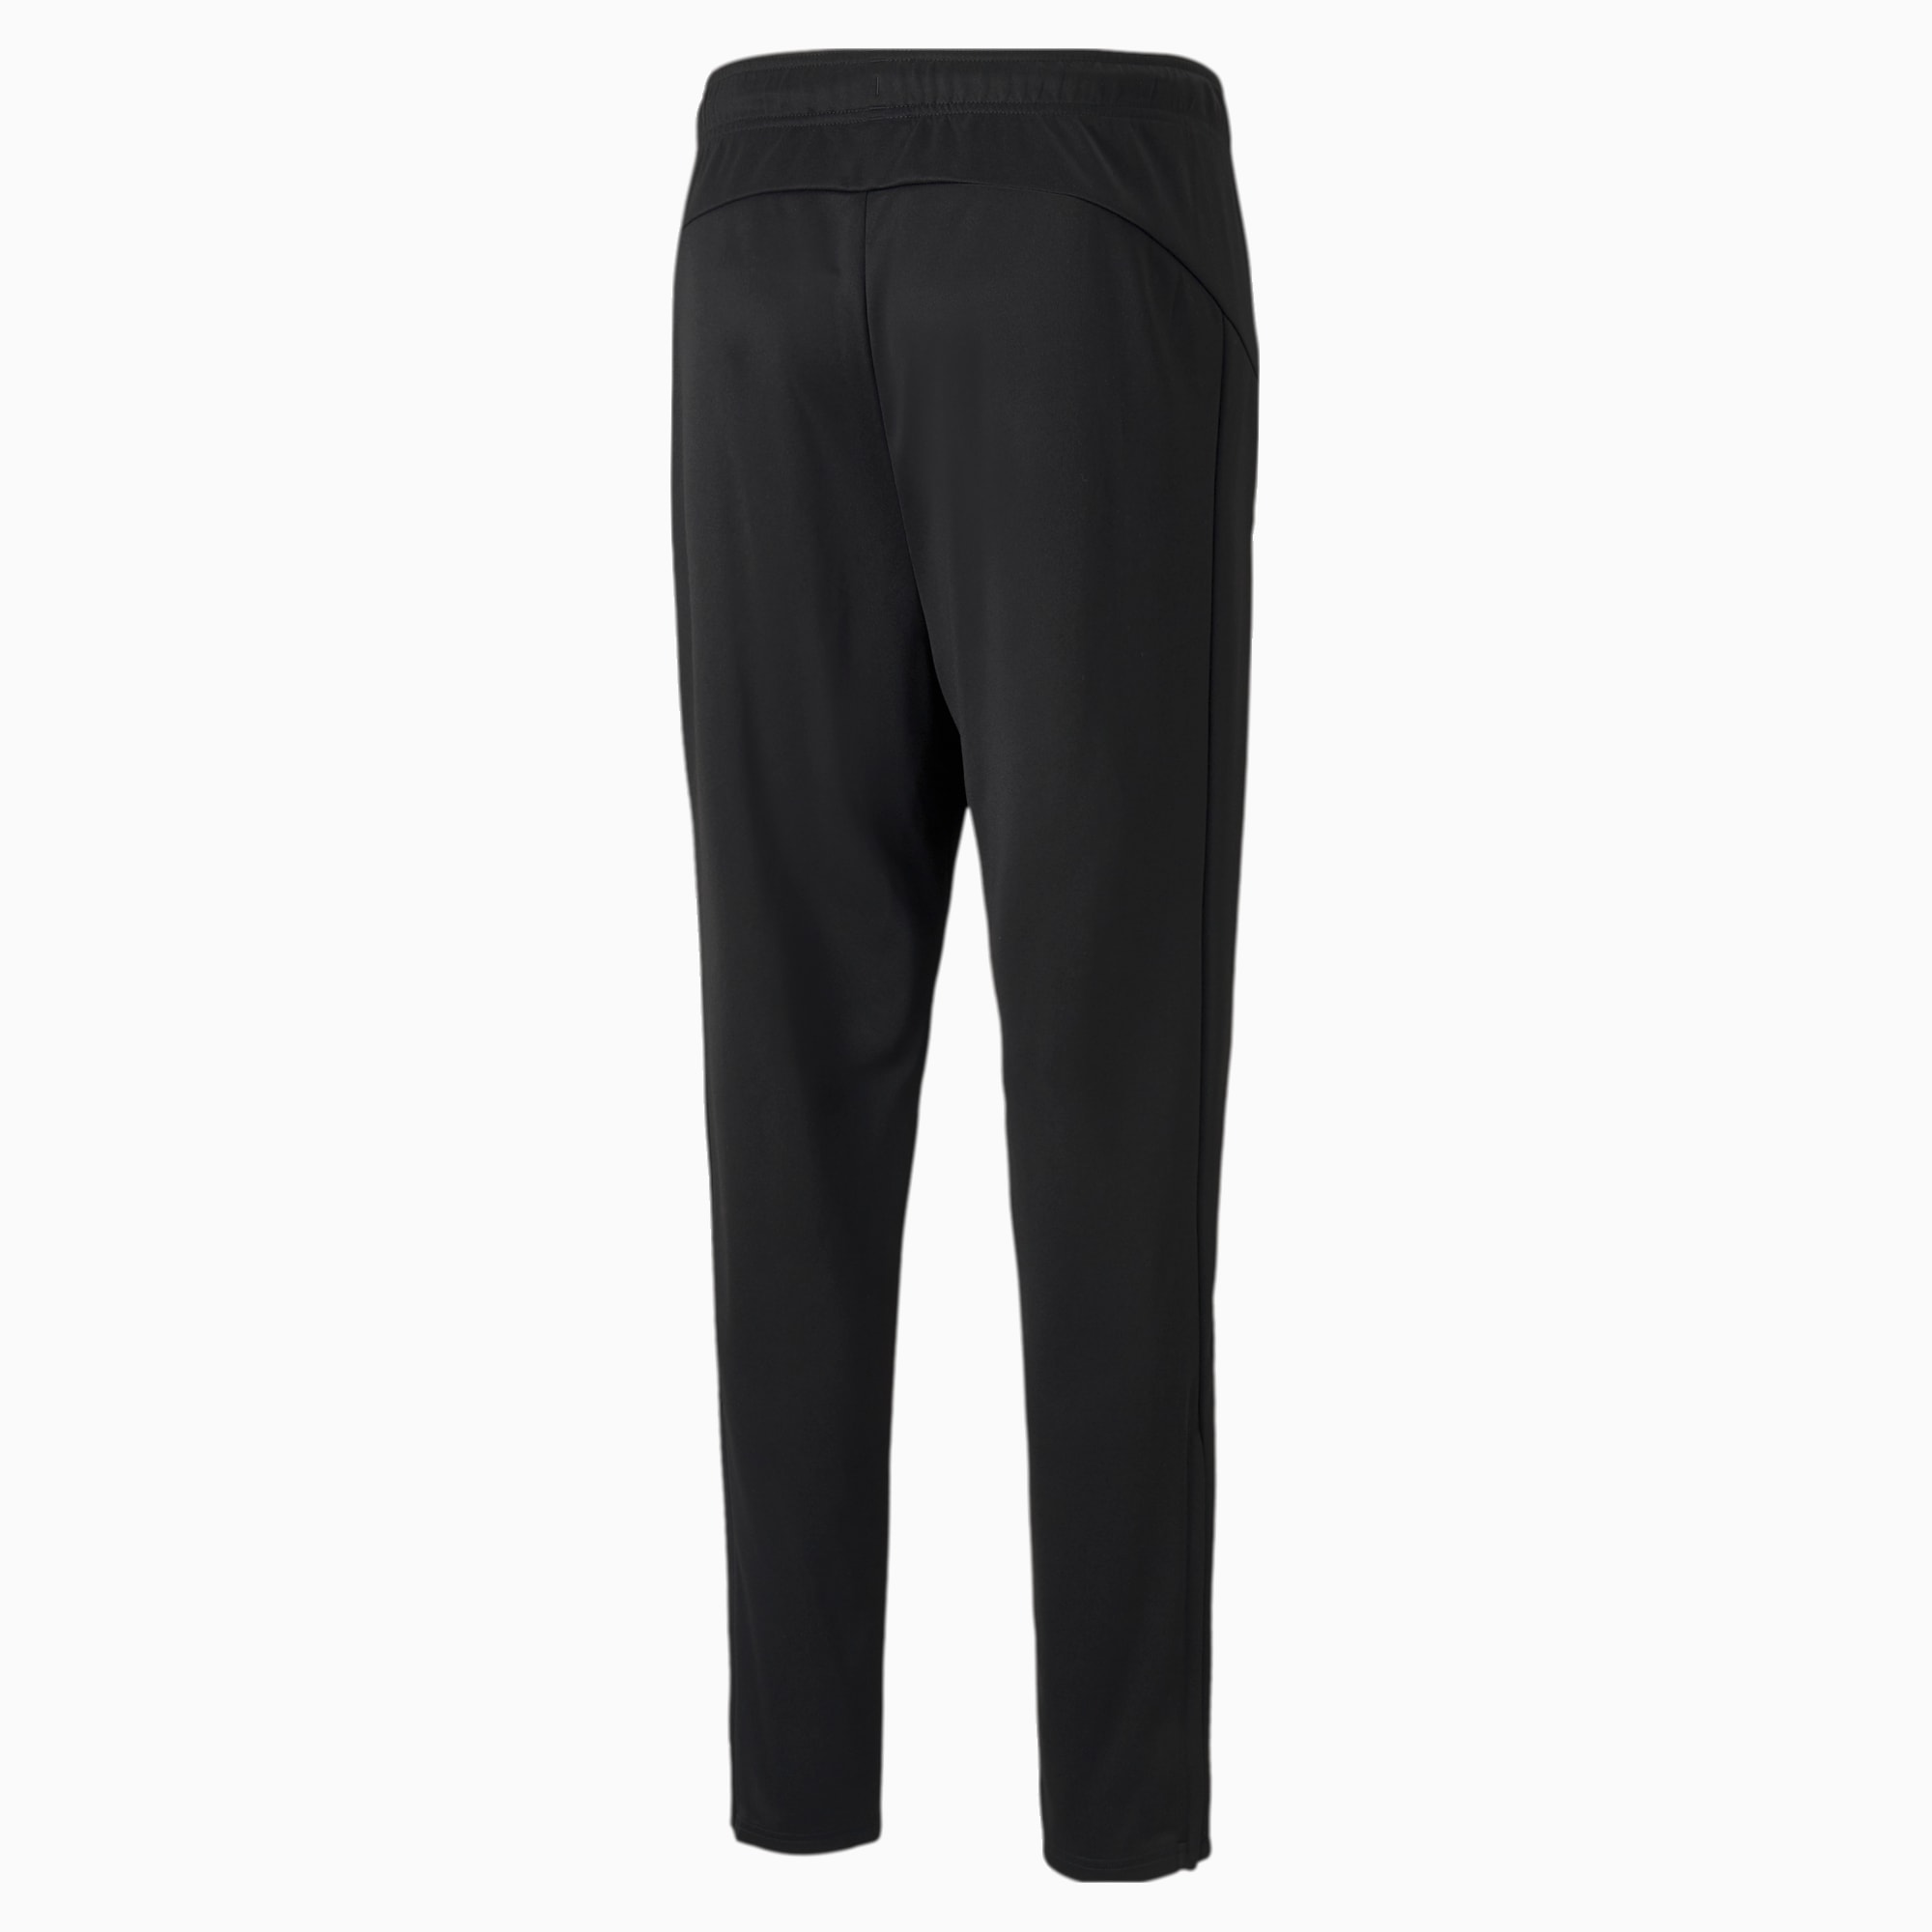 PUMA Active Tricot Men's Sweatpants, Black, Size XXL, Clothing